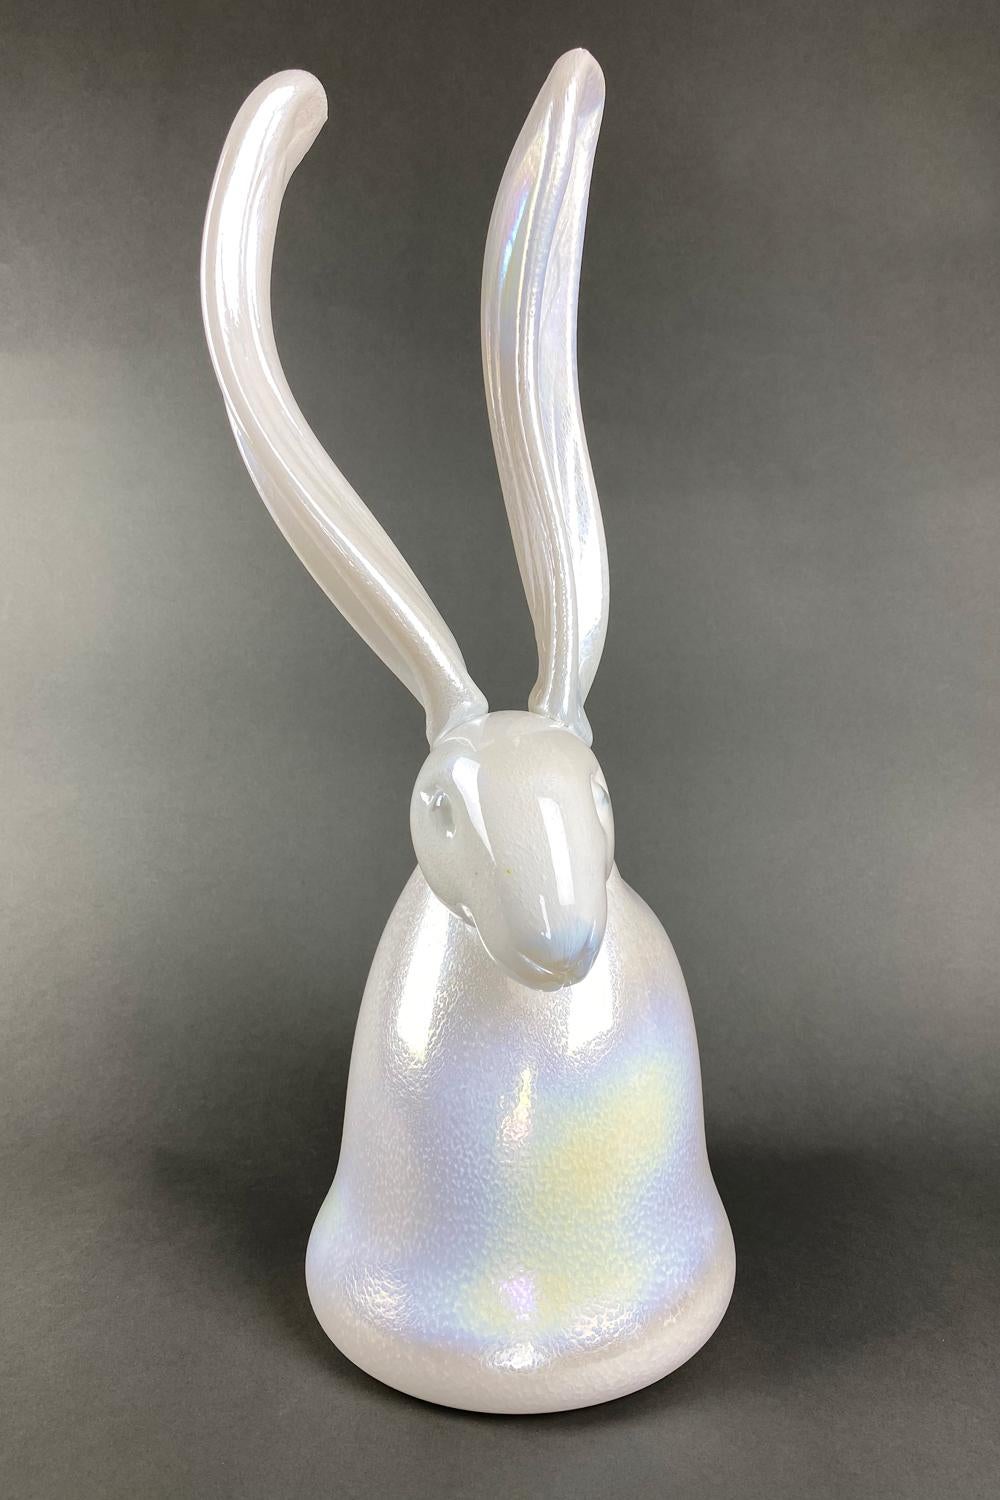 Hunt Slonem Figurative Sculpture - "Enamel" White Bunny Sculpture Unique Blown Glass Sculpture